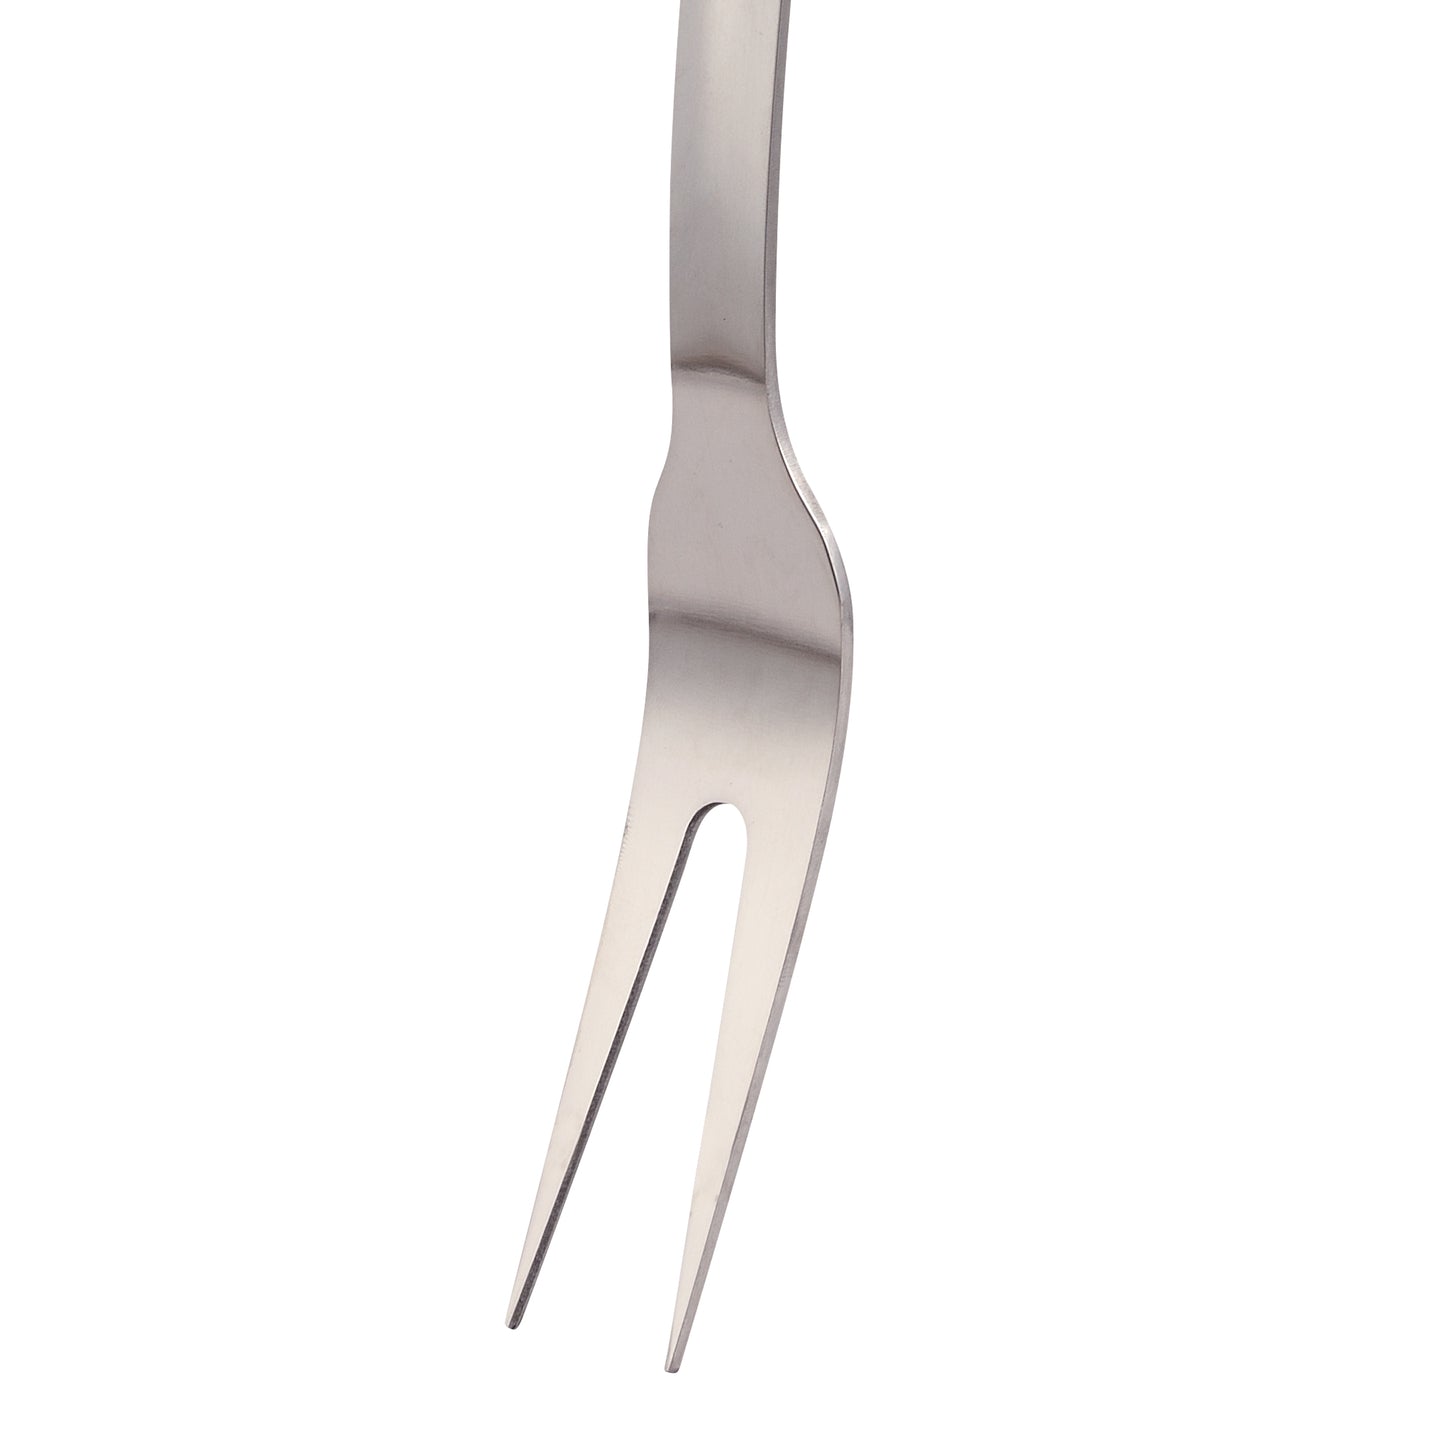 Tenedor trinchador Bergner 35 cm - Gizmo (3)